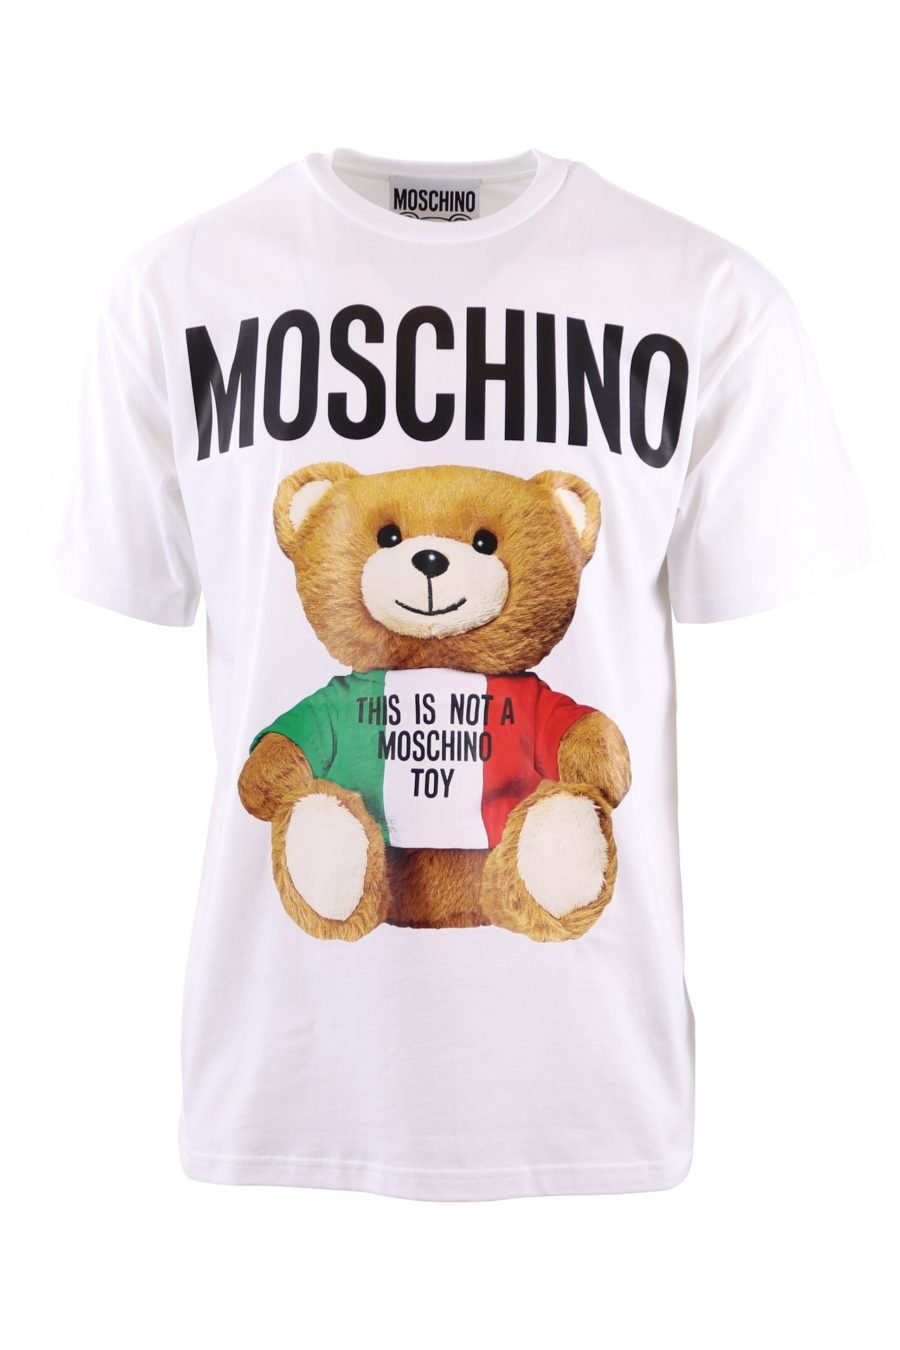 Moschino Couture T-shirt branca oversize com urso grande - bc685390dd4534e751af4e4b5cb56dcd1c567e1a